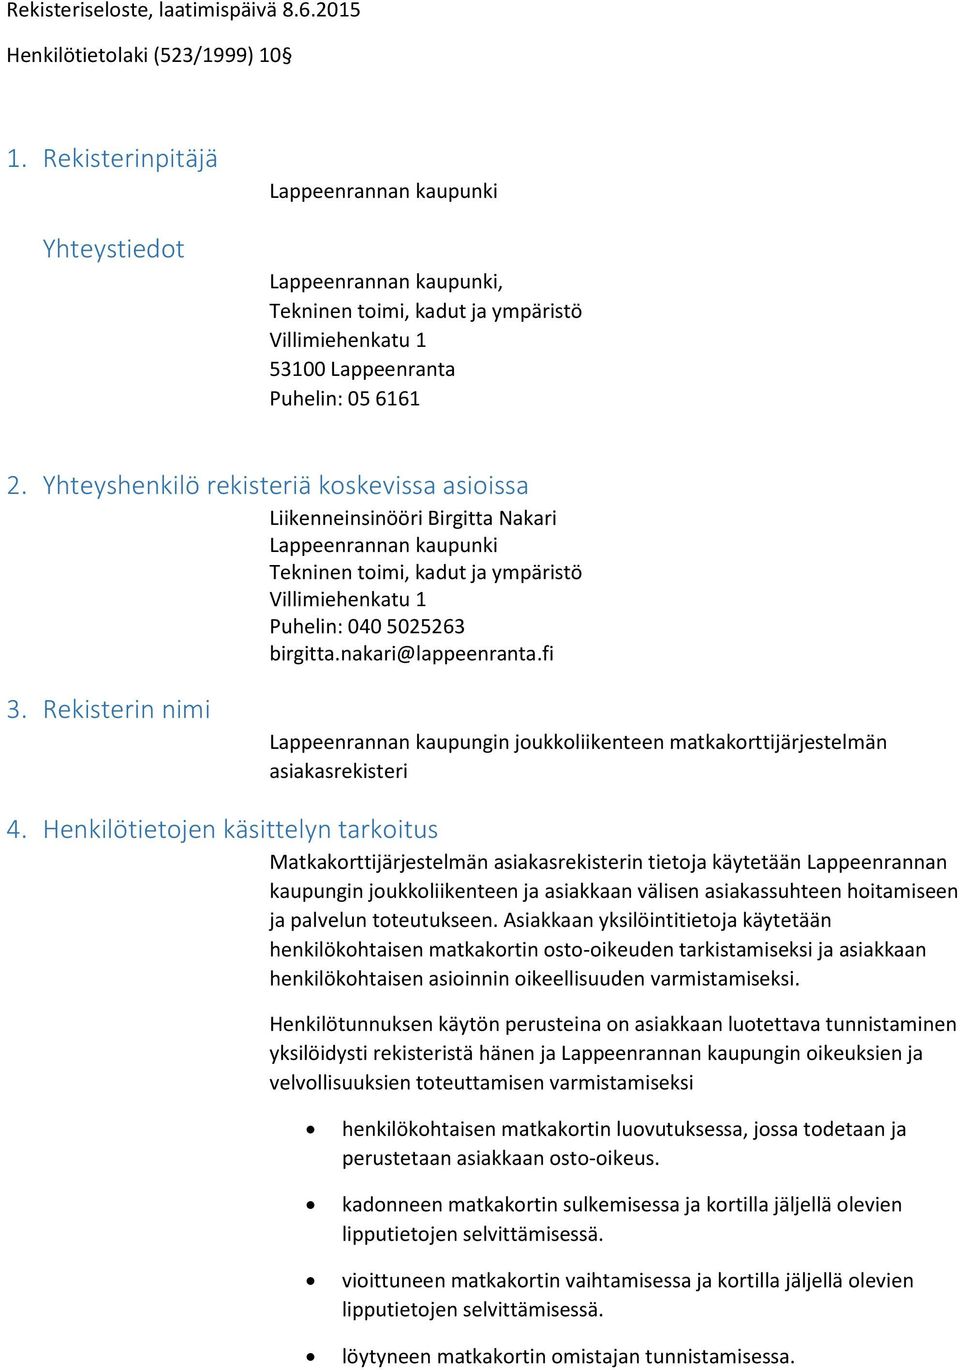 Yhteyshenkilö rekisteriä kskevissa asiissa Liikenneinsinööri Birgitta Nakari Lappeenrannan kaupunki Tekninen timi, kadut ja ympäristö Villimiehenkatu 1 Puhelin: 040 5025263 birgitta.